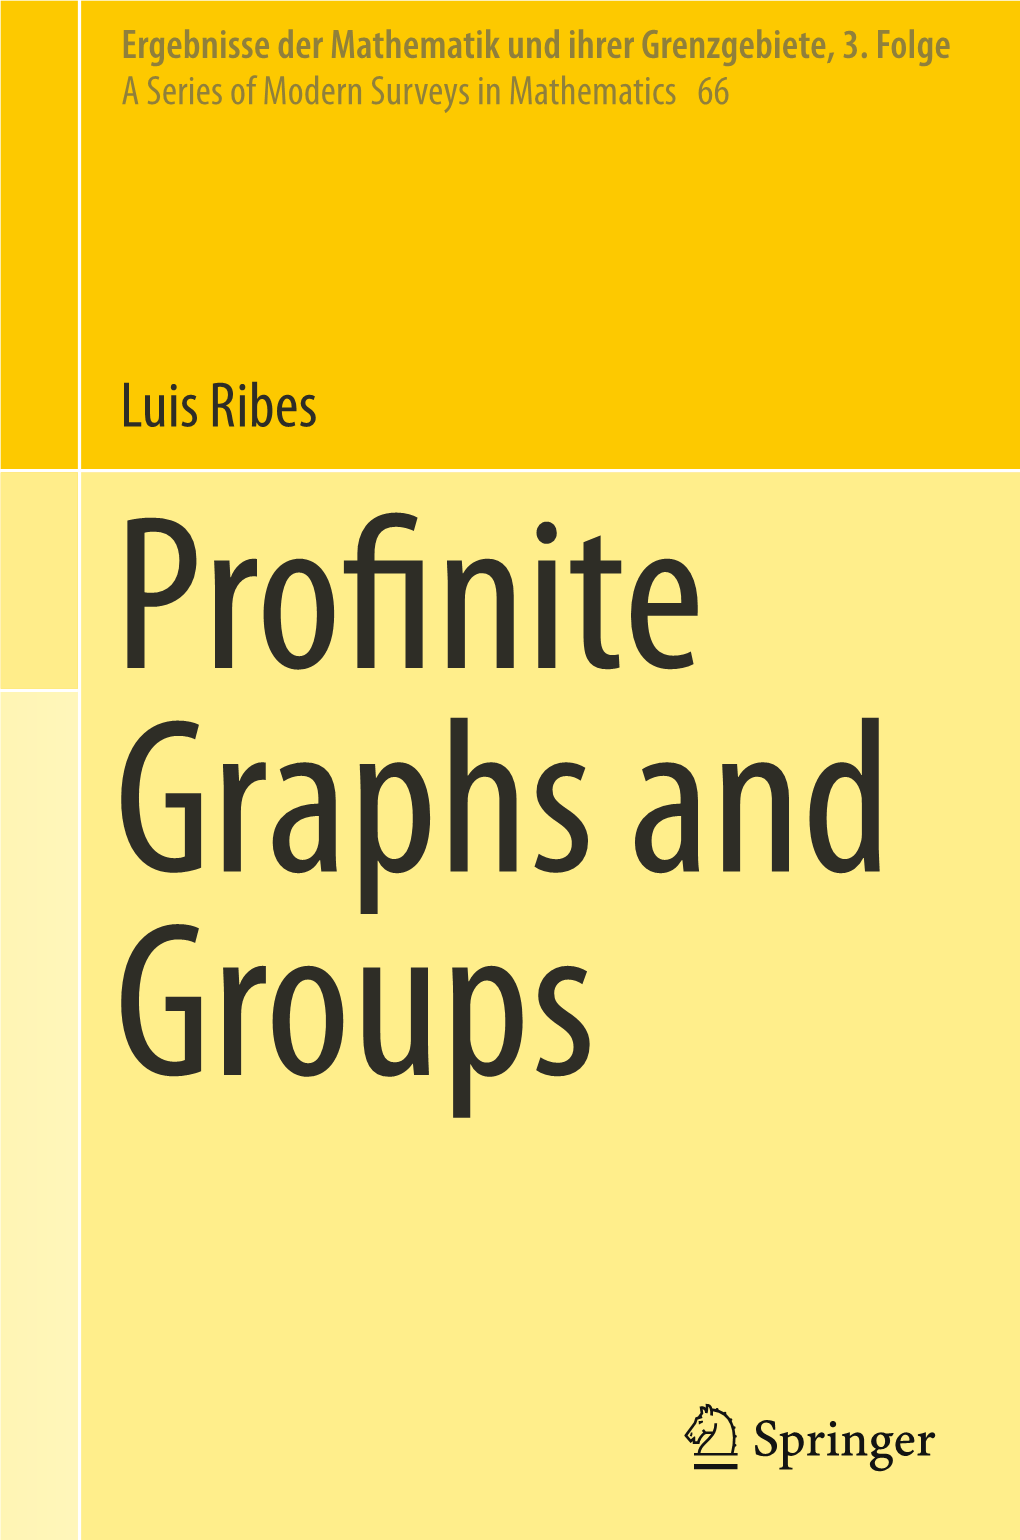 Luis Ribes Profi Nite Graphs and Groups Ergebnisse Der Mathematik Und Volume 66 Ihrer Grenzgebiete